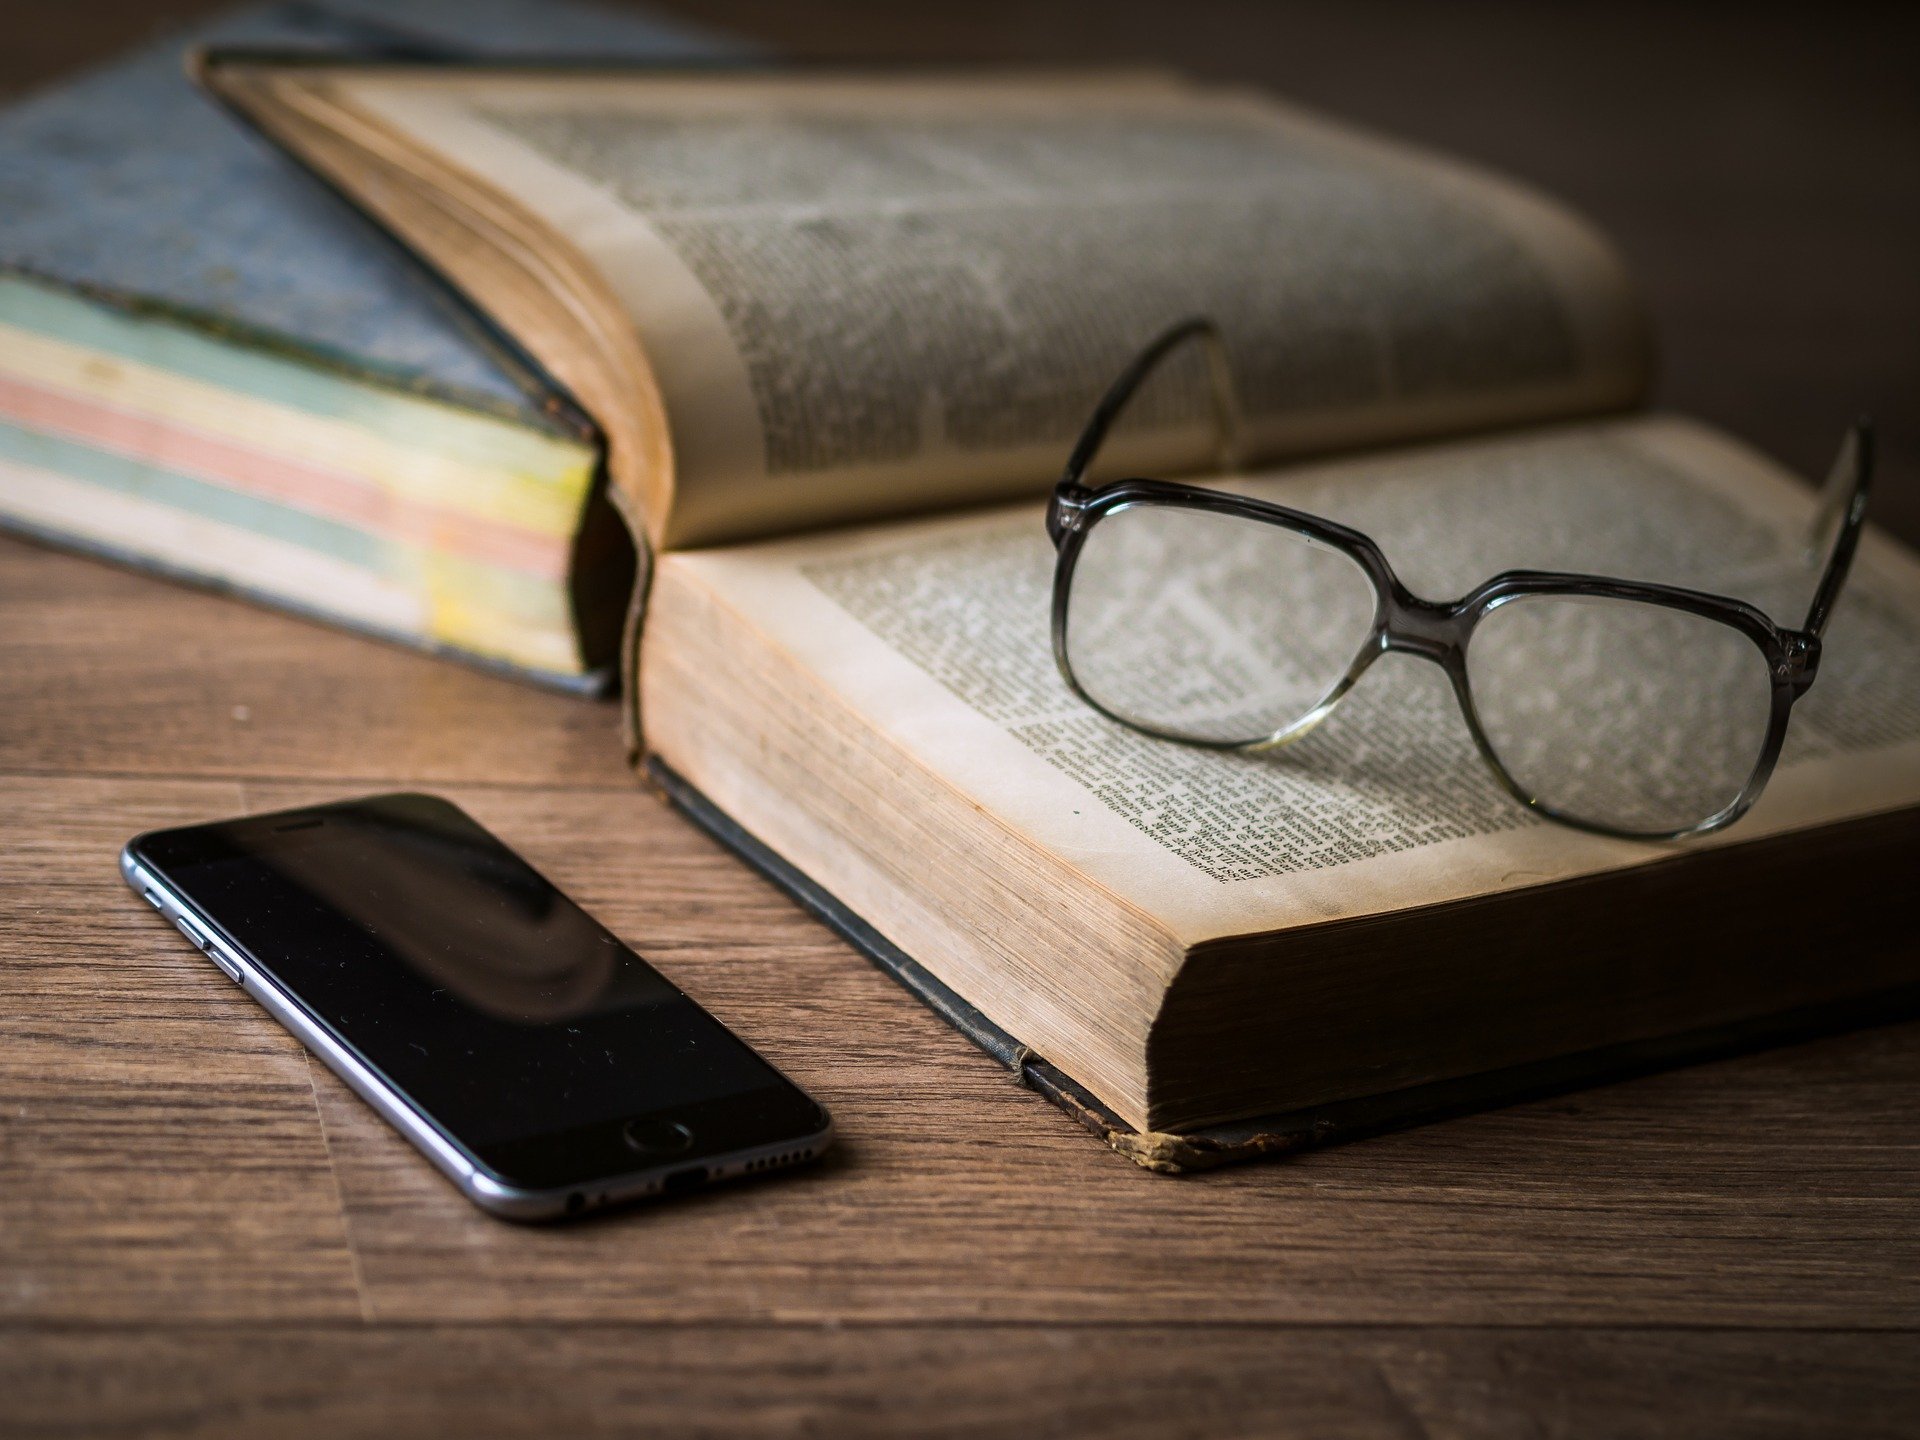 Foto de livro com óculos em cima e celular ao lado